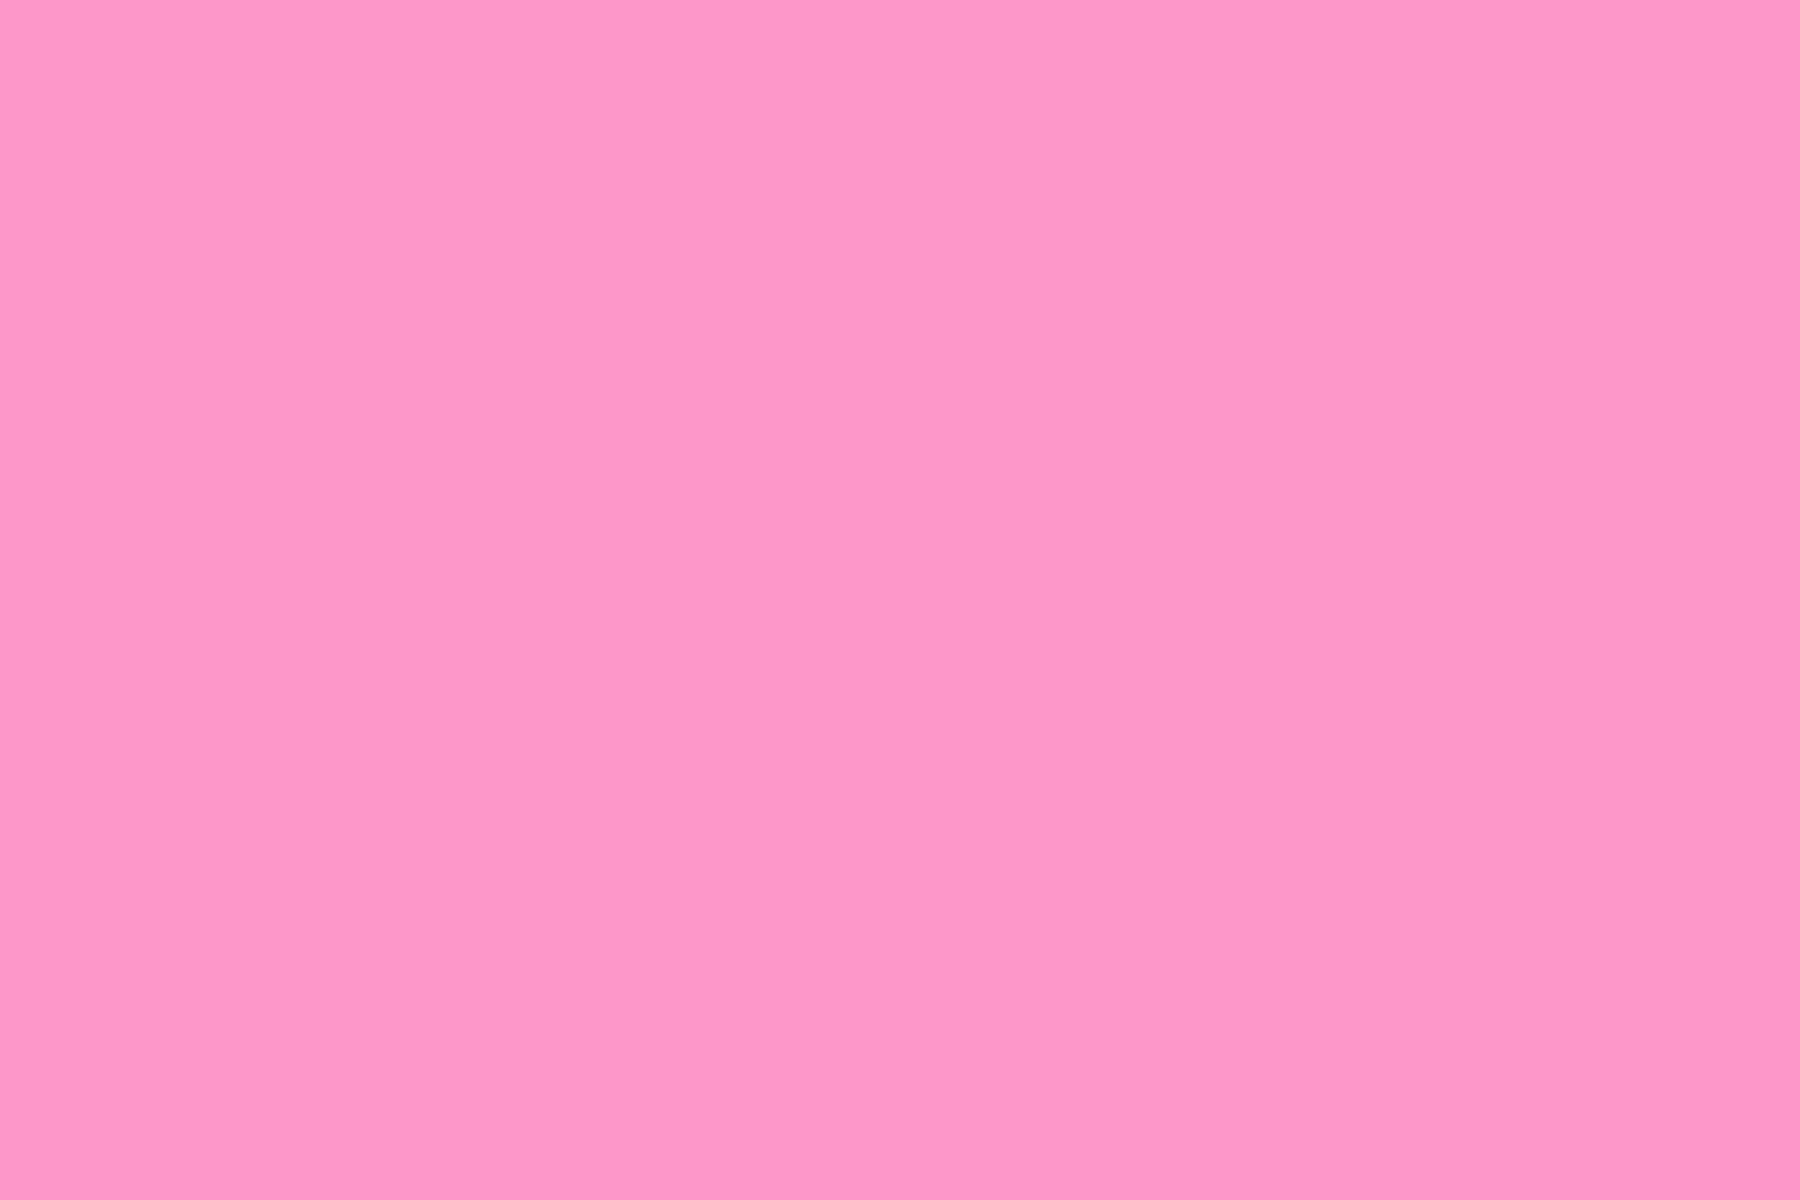 Soft Pink 1800 X 1200 Wallpaper